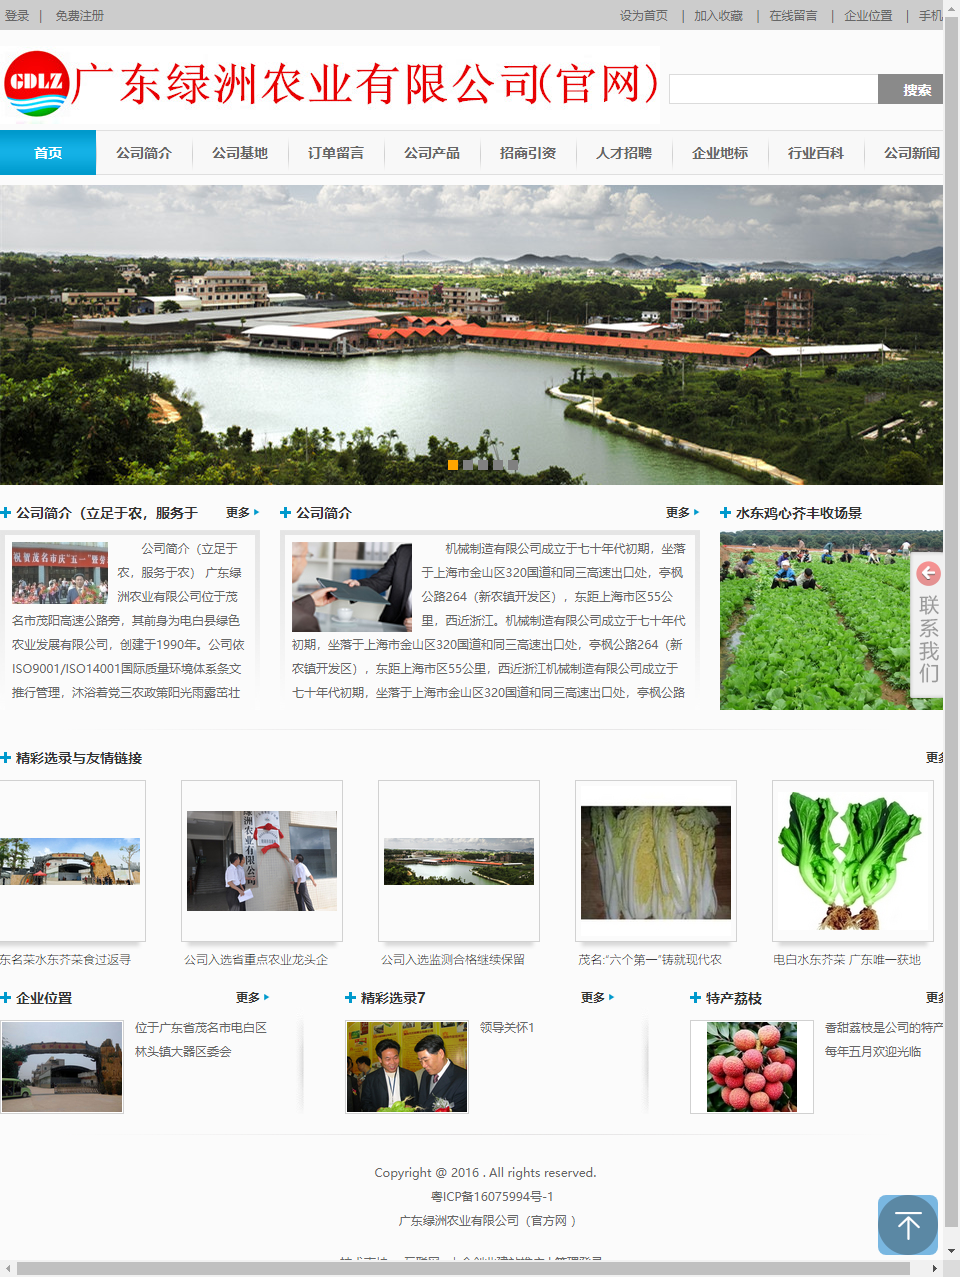 广东绿洲农业有限公司网站案例